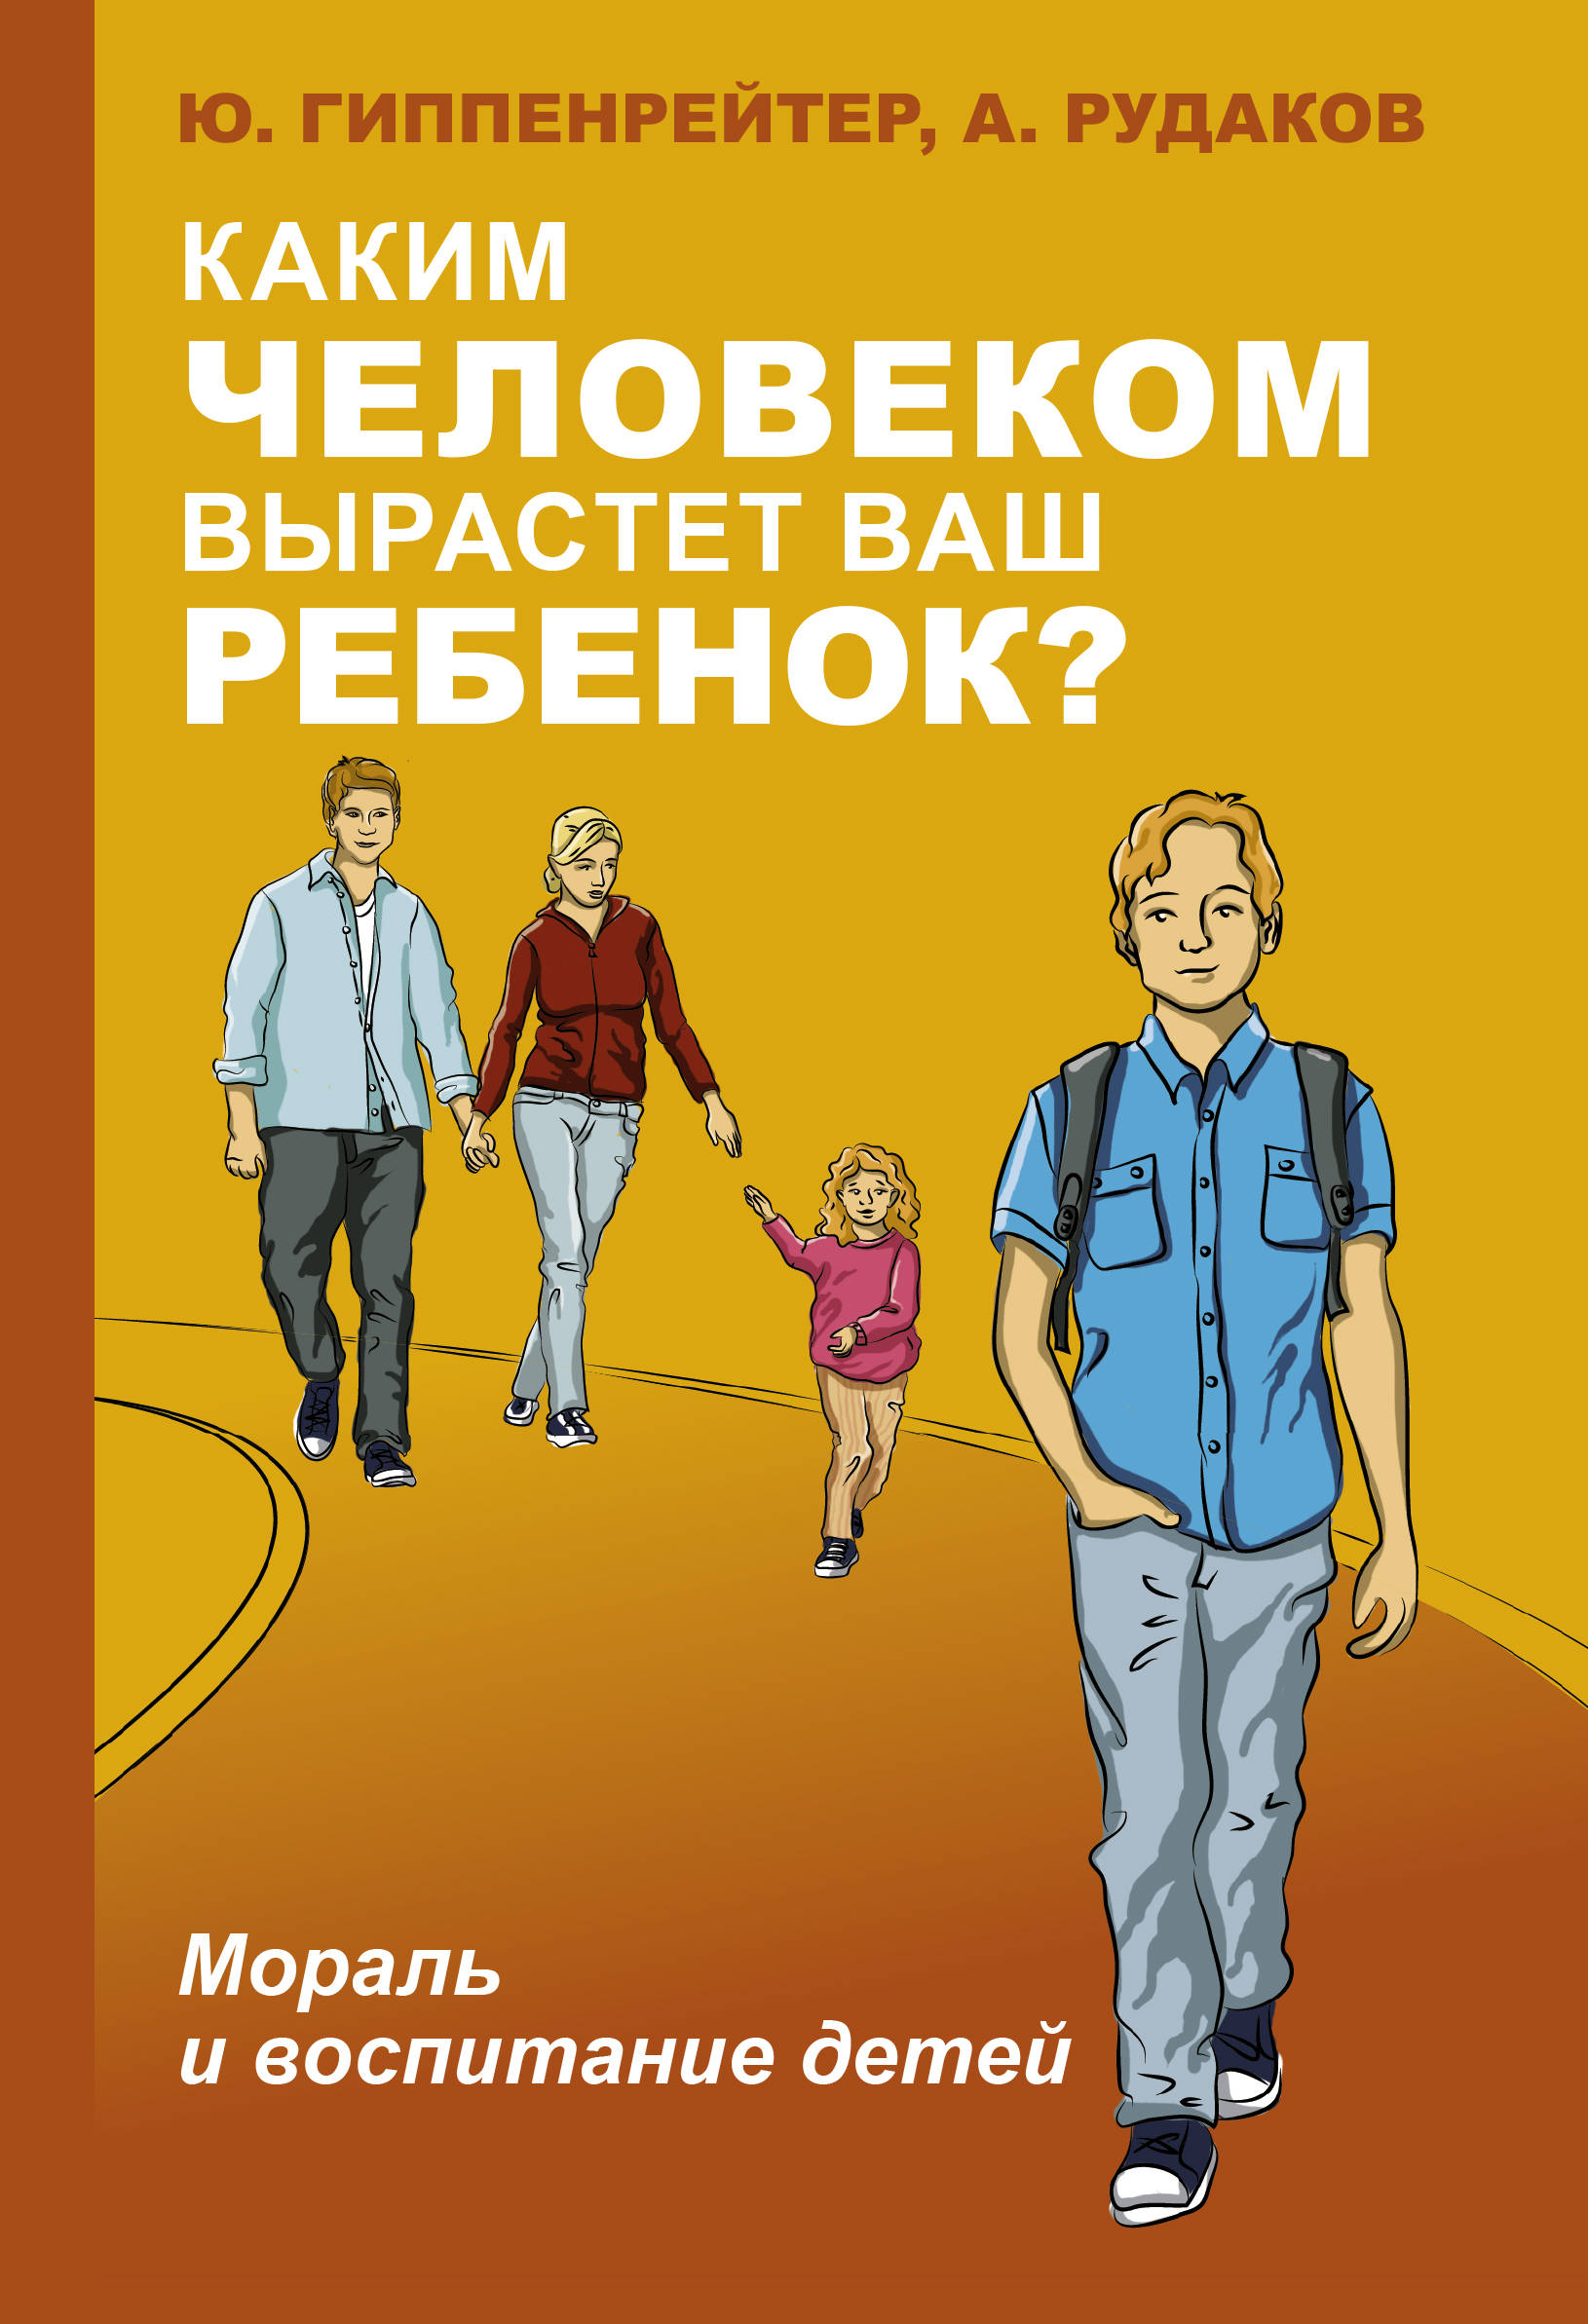 Гиппенрейтер Юлия Борисовна - Каким человеком вырастет ваш ребенок? Мораль и воспитание детей